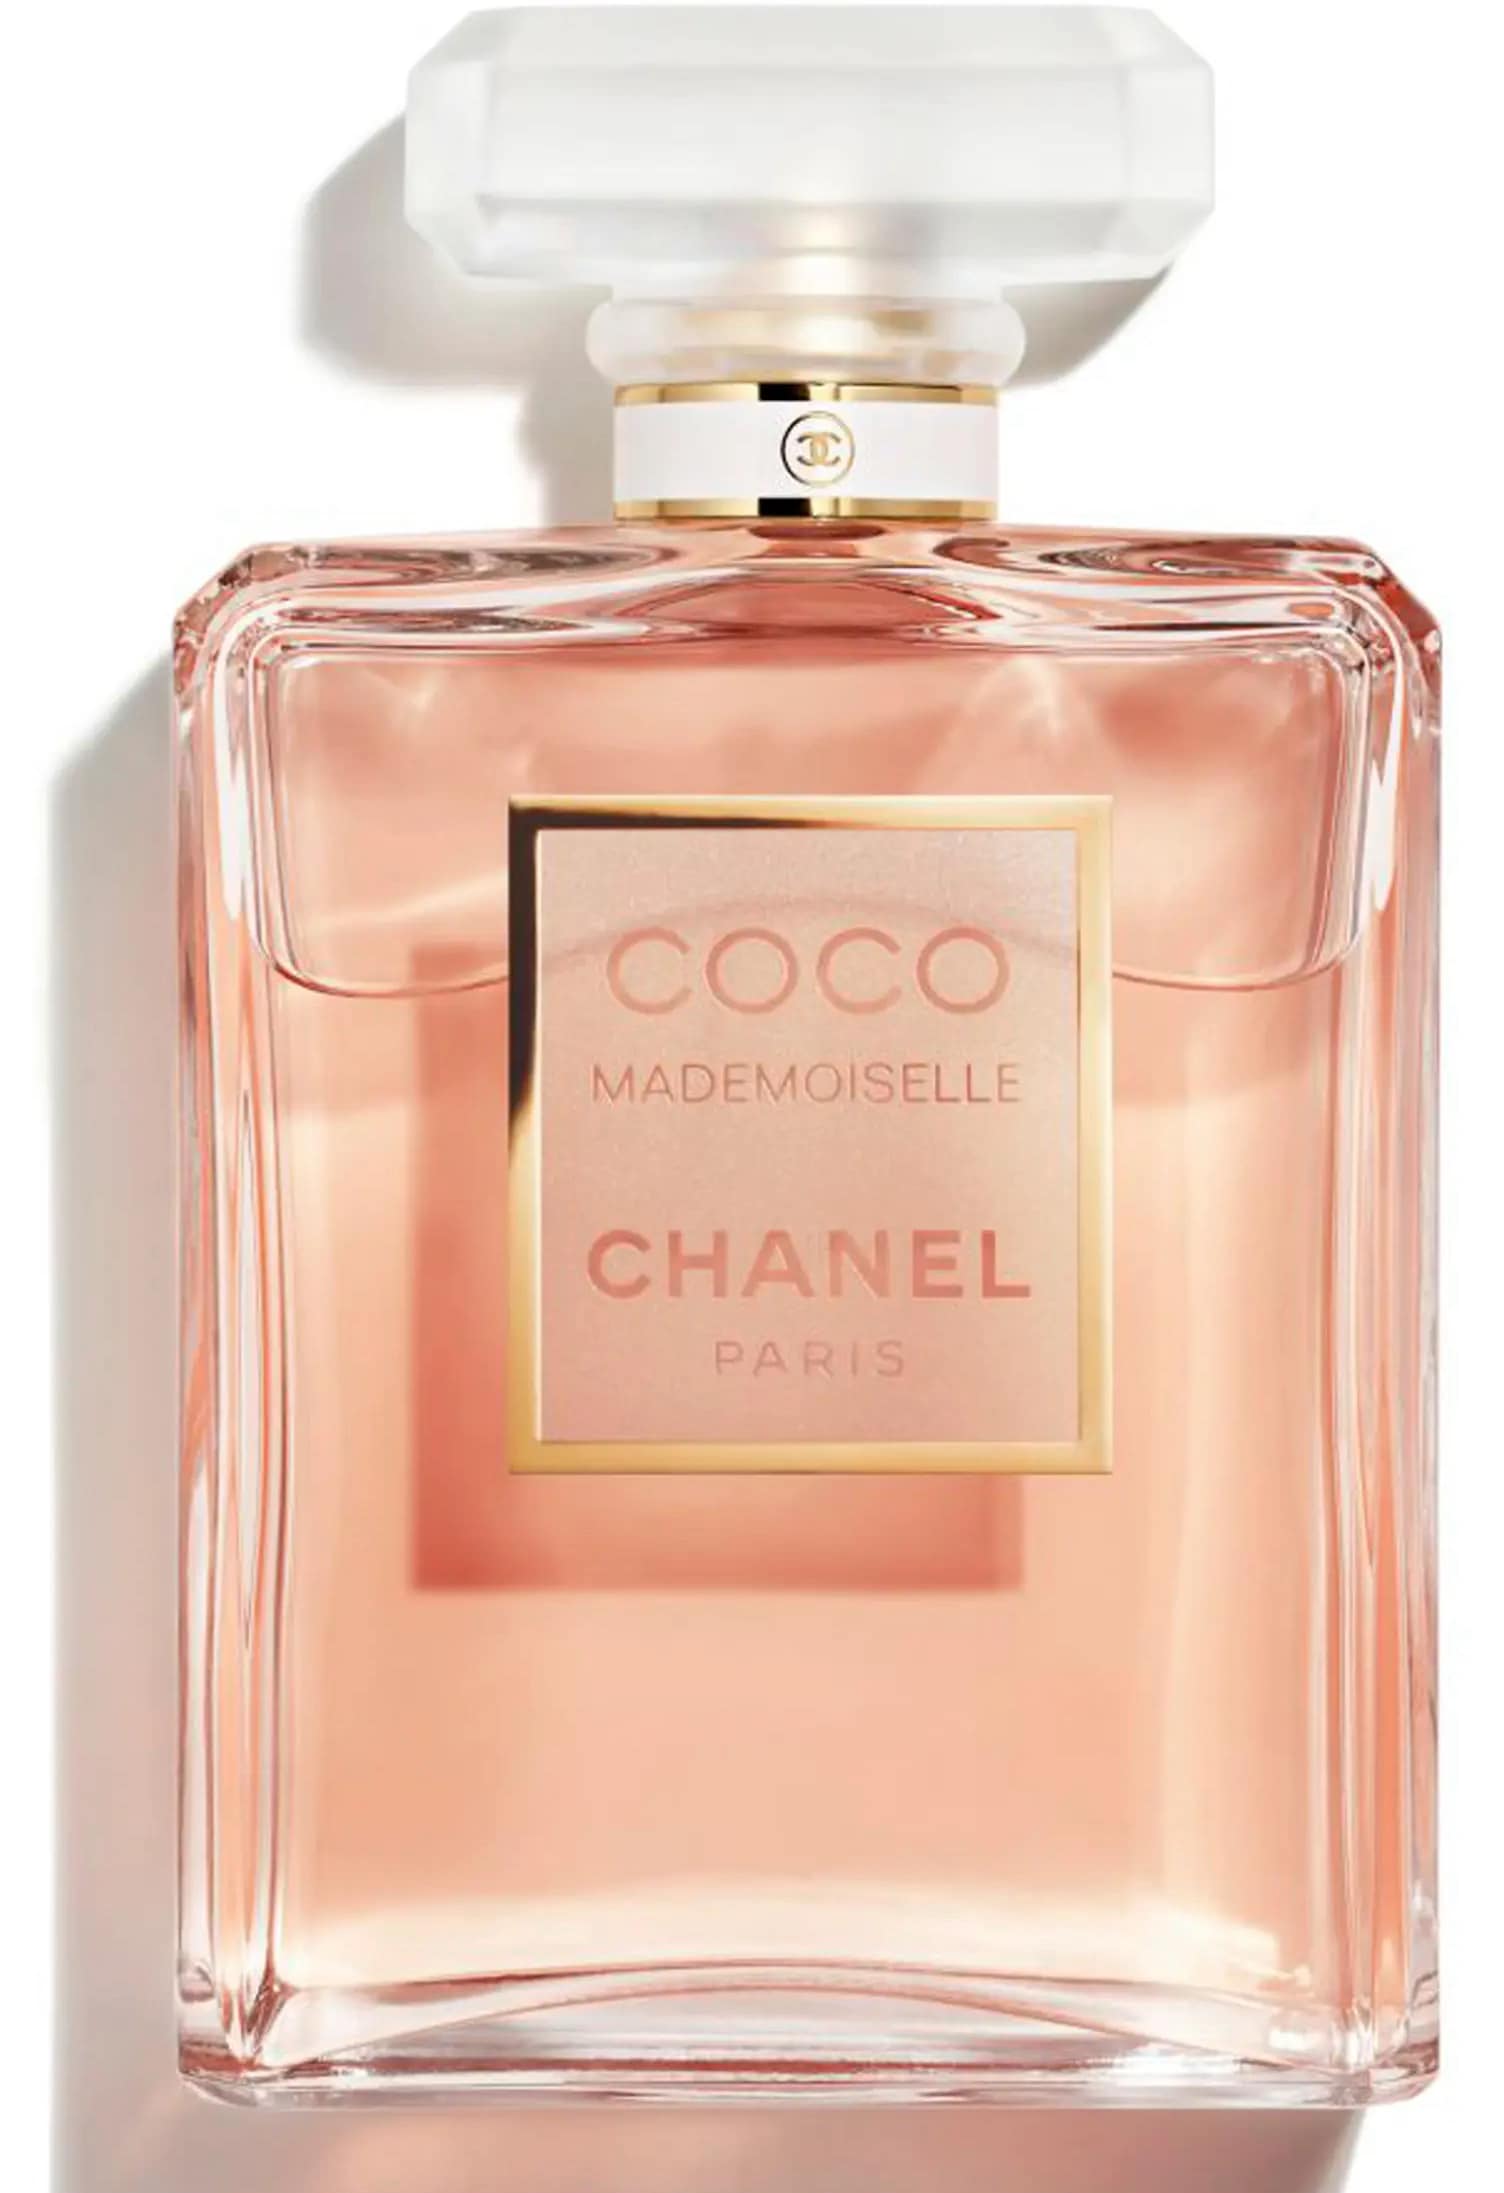 Coco Mademoiselle Chanel perfume bottle